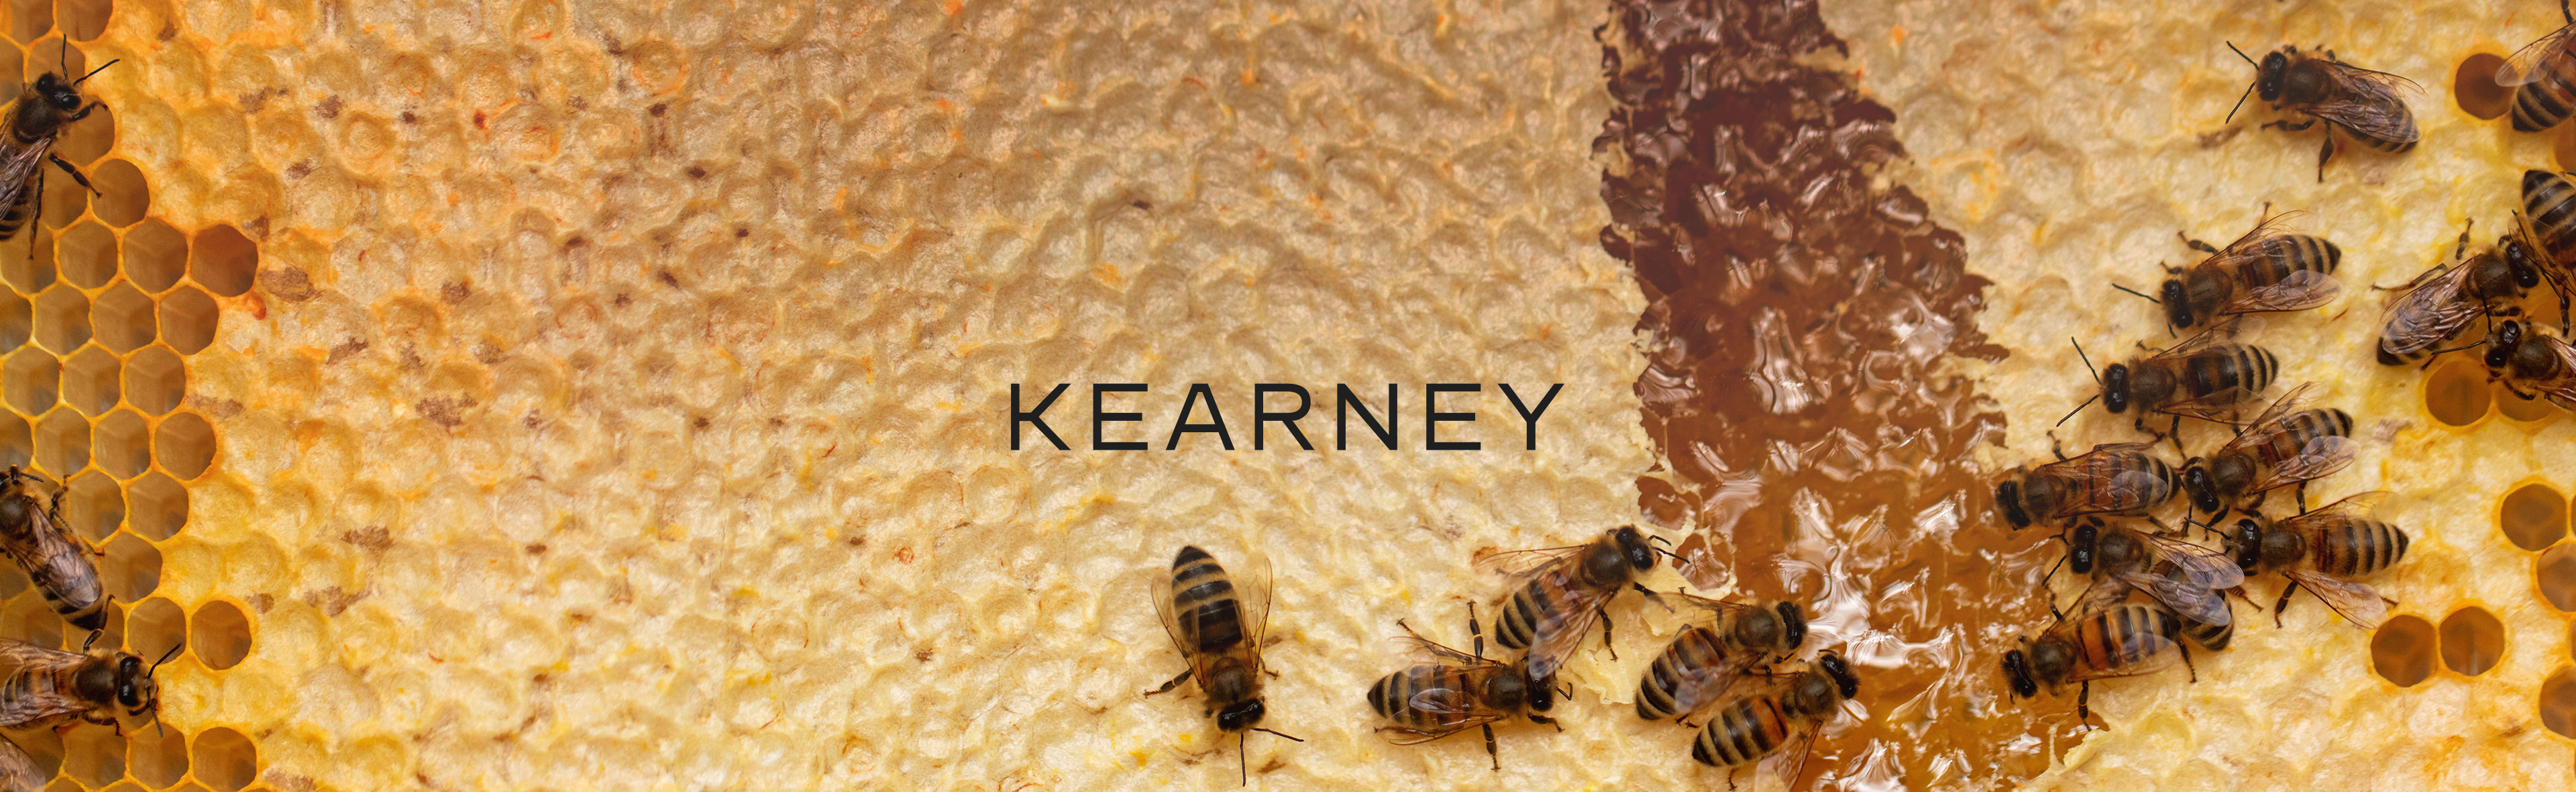 Bienenpatenschaft Kearney